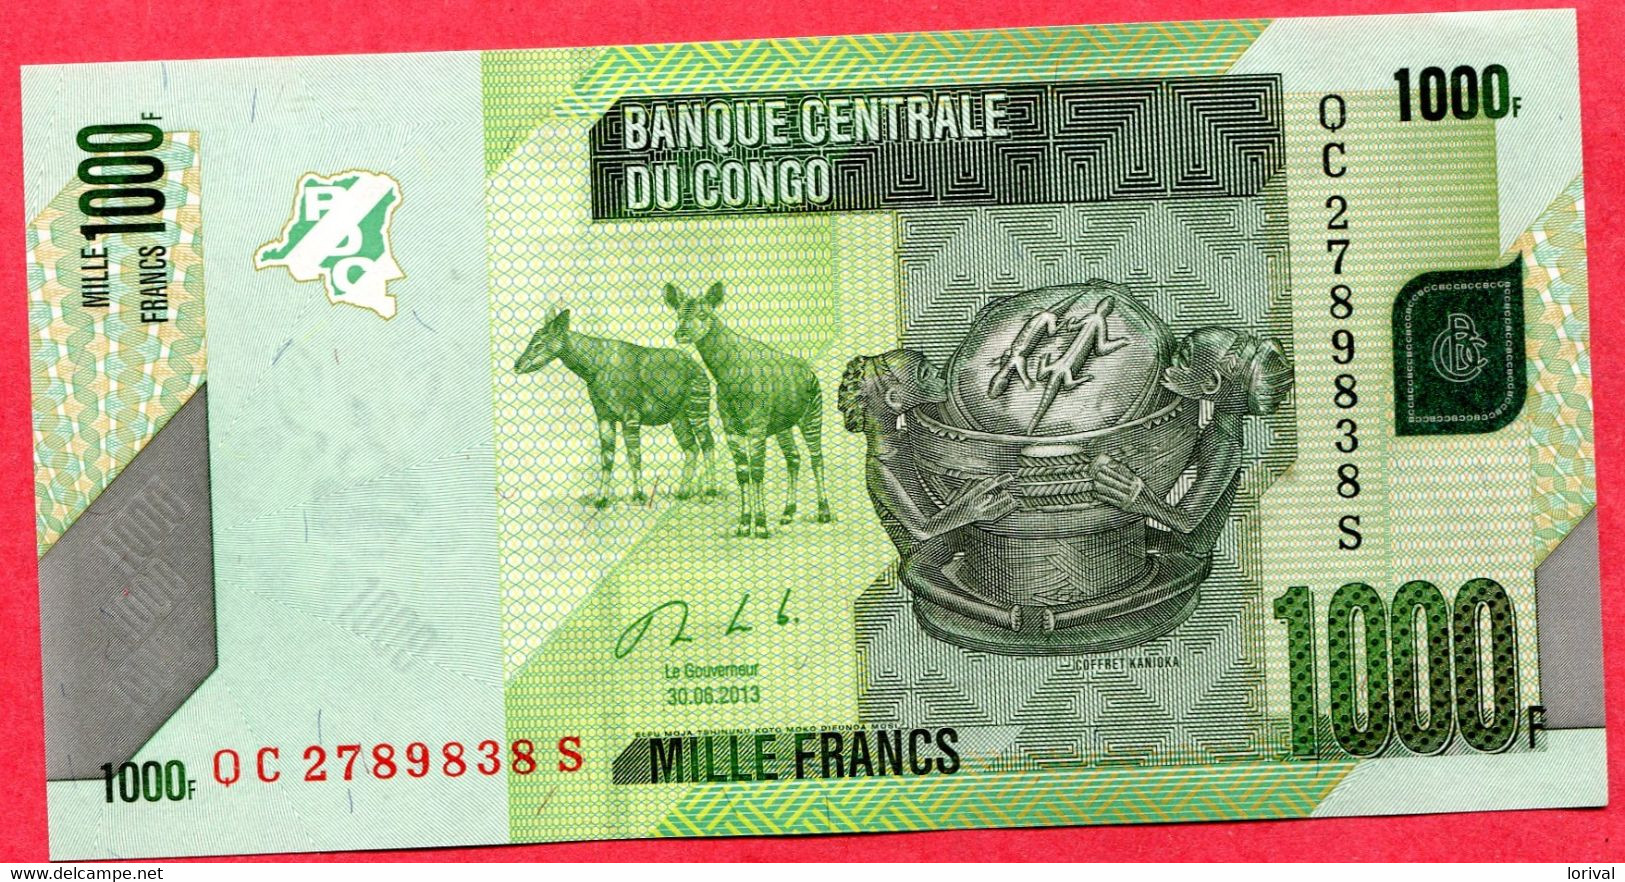 1000 Francs 2013 Neuf 3 Euros - République Du Congo (Congo-Brazzaville)